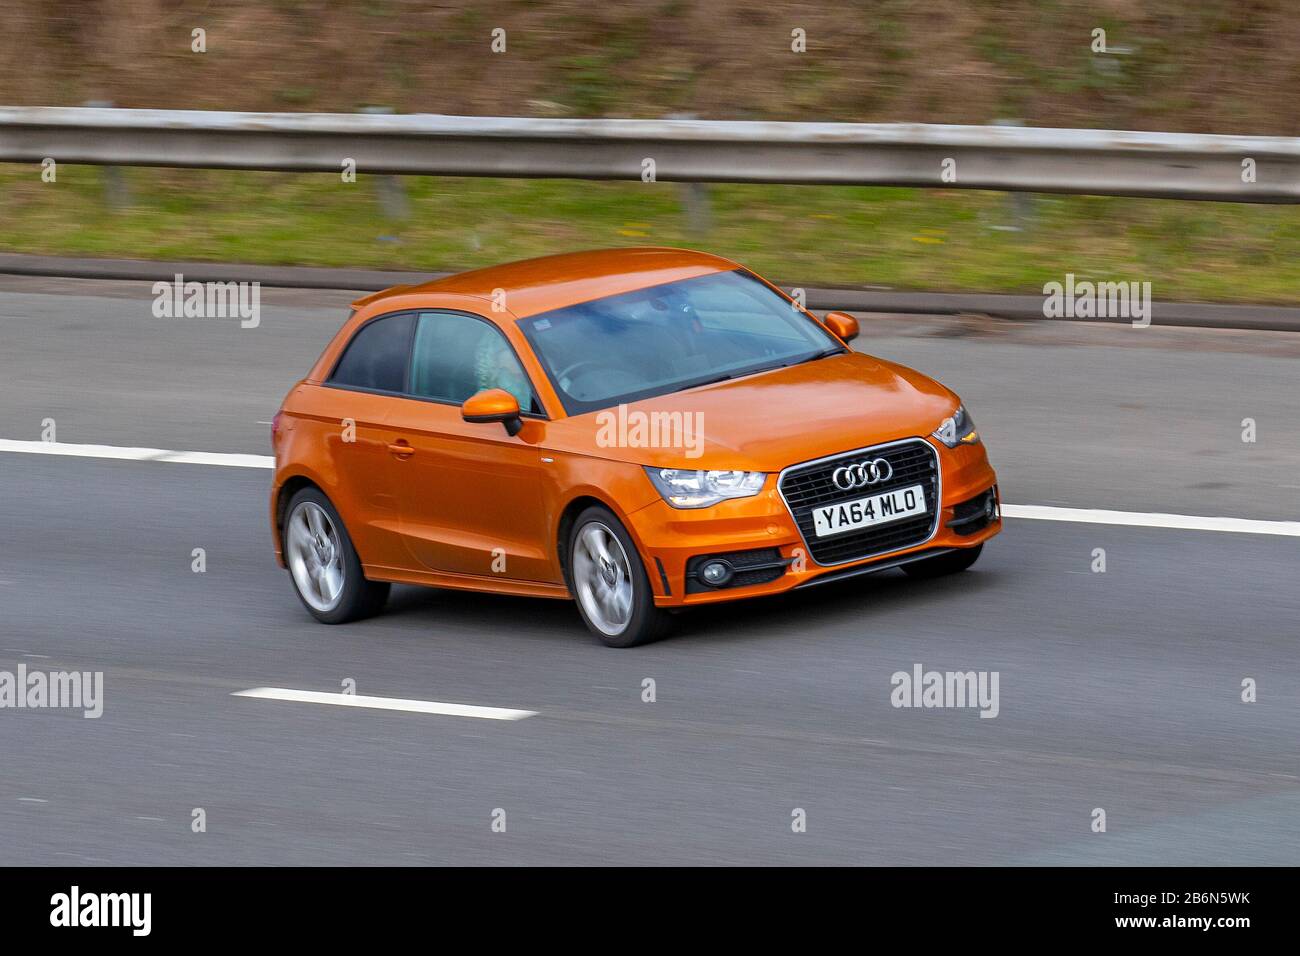 2015 Orange Audi A1 S Line TFSI; UK Vehicular Traffic, Transport, moderne  Fahrzeuge, Salonwagen, verschwommene bewegte Fahrzeuge, Fahrzeug, Straßen,  Motoren, fahrende Autofahrer auf der Autobahn M6 Stockfotografie - Alamy